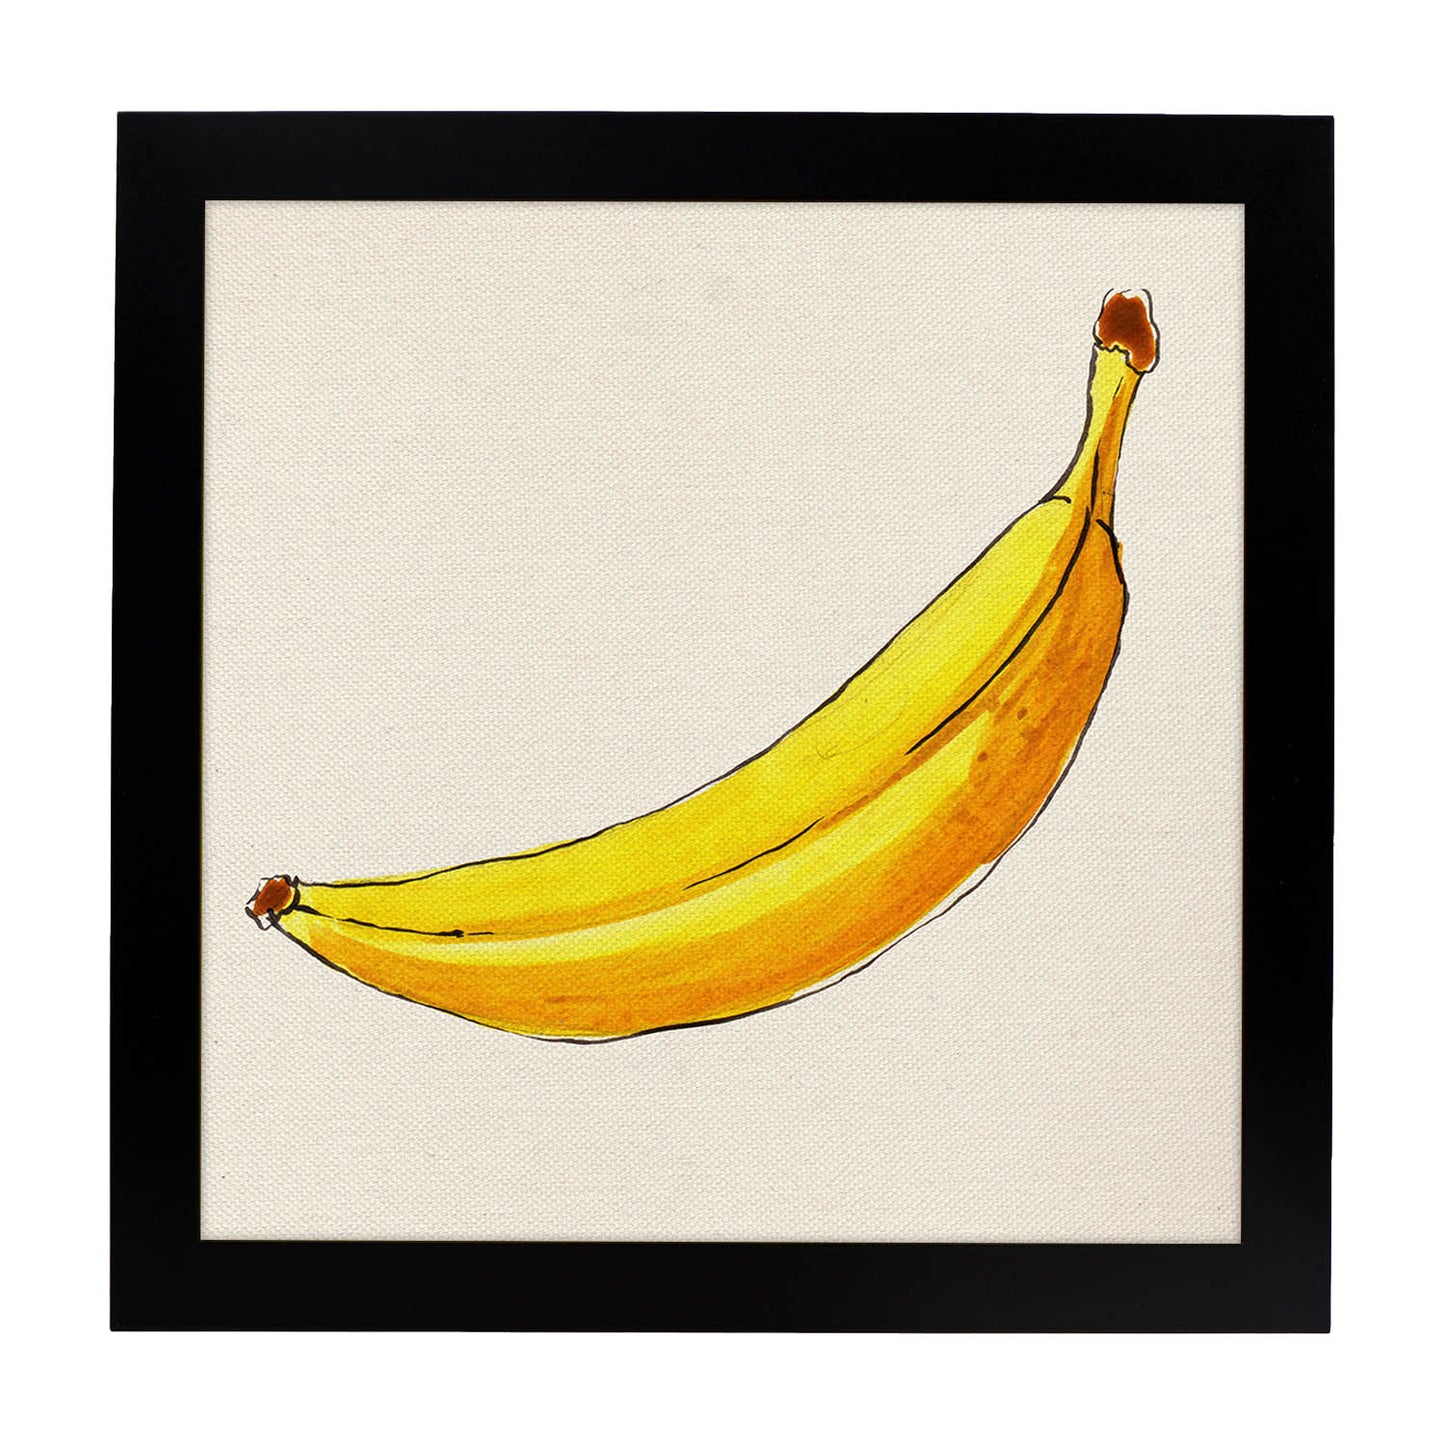 Poster cuadrado de Banana solitaria. Lámina de frutas y verduras de forma cuadrada, ilustrada con dibujos a color.-Artwork-Nacnic-20x20 cm-Marco Negro-Nacnic Estudio SL